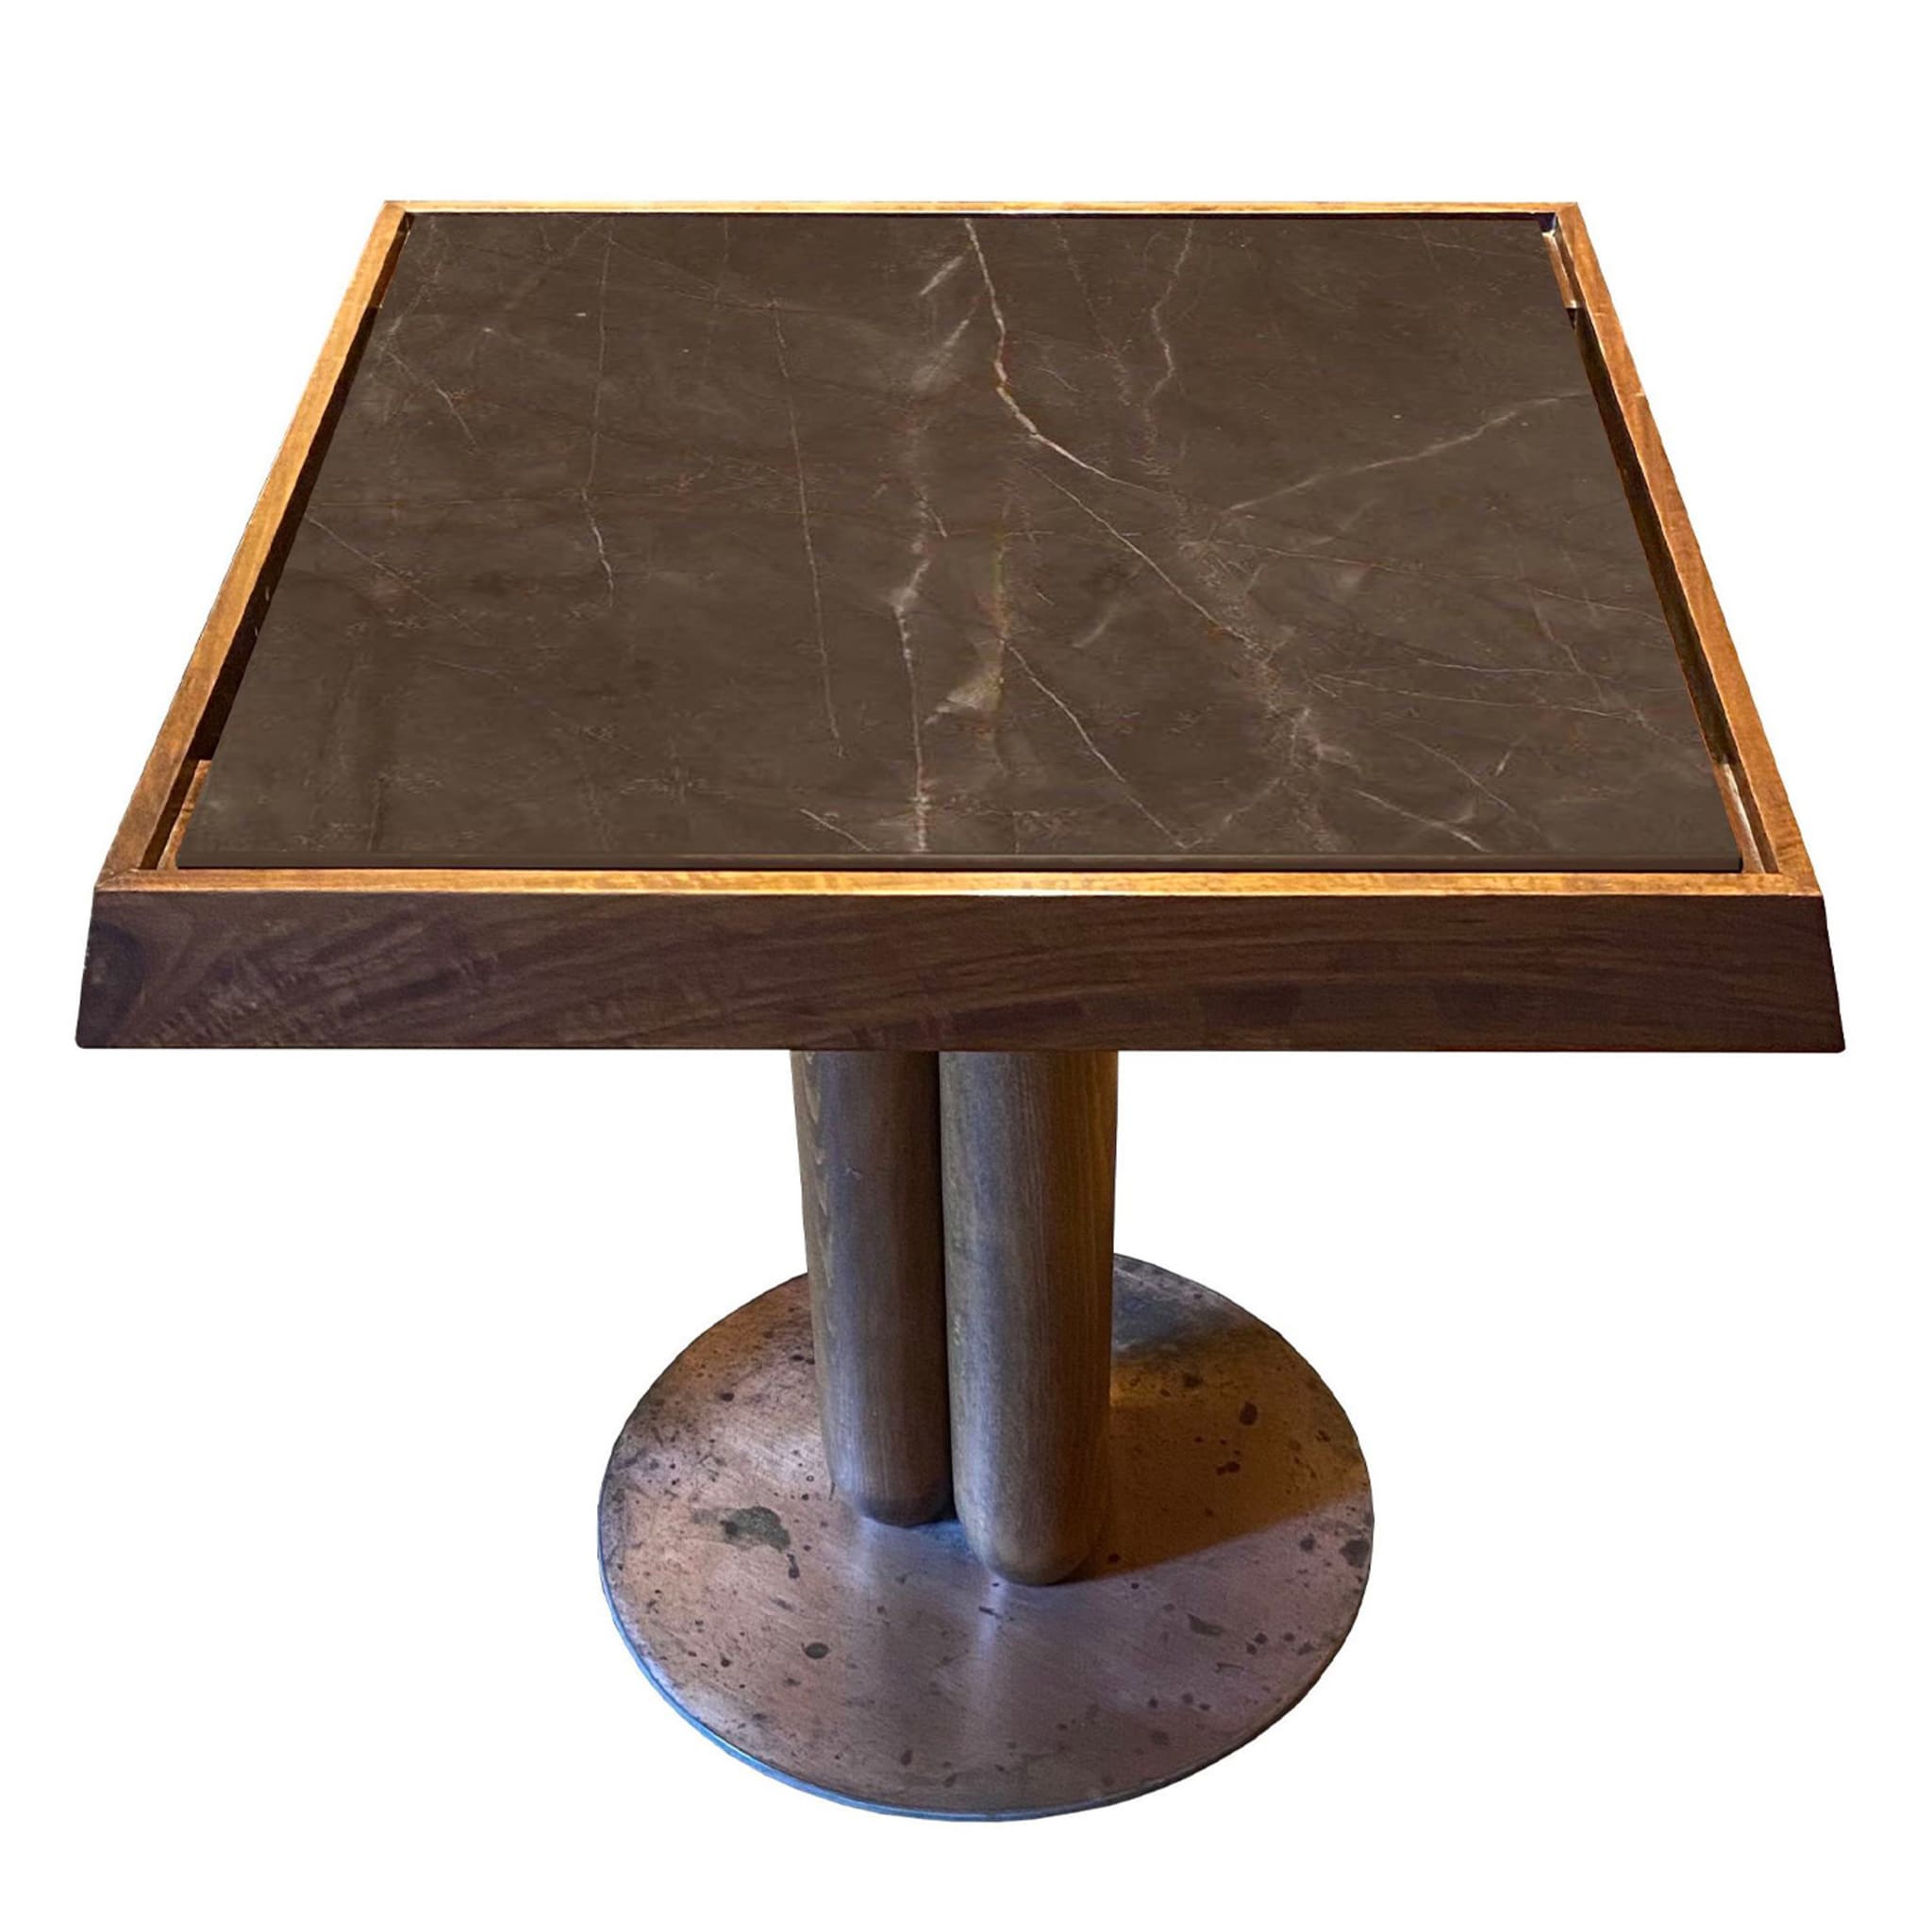 Appoggio Moresco Square Coffee Table by Ferdinando Meccani - Alternative view 3